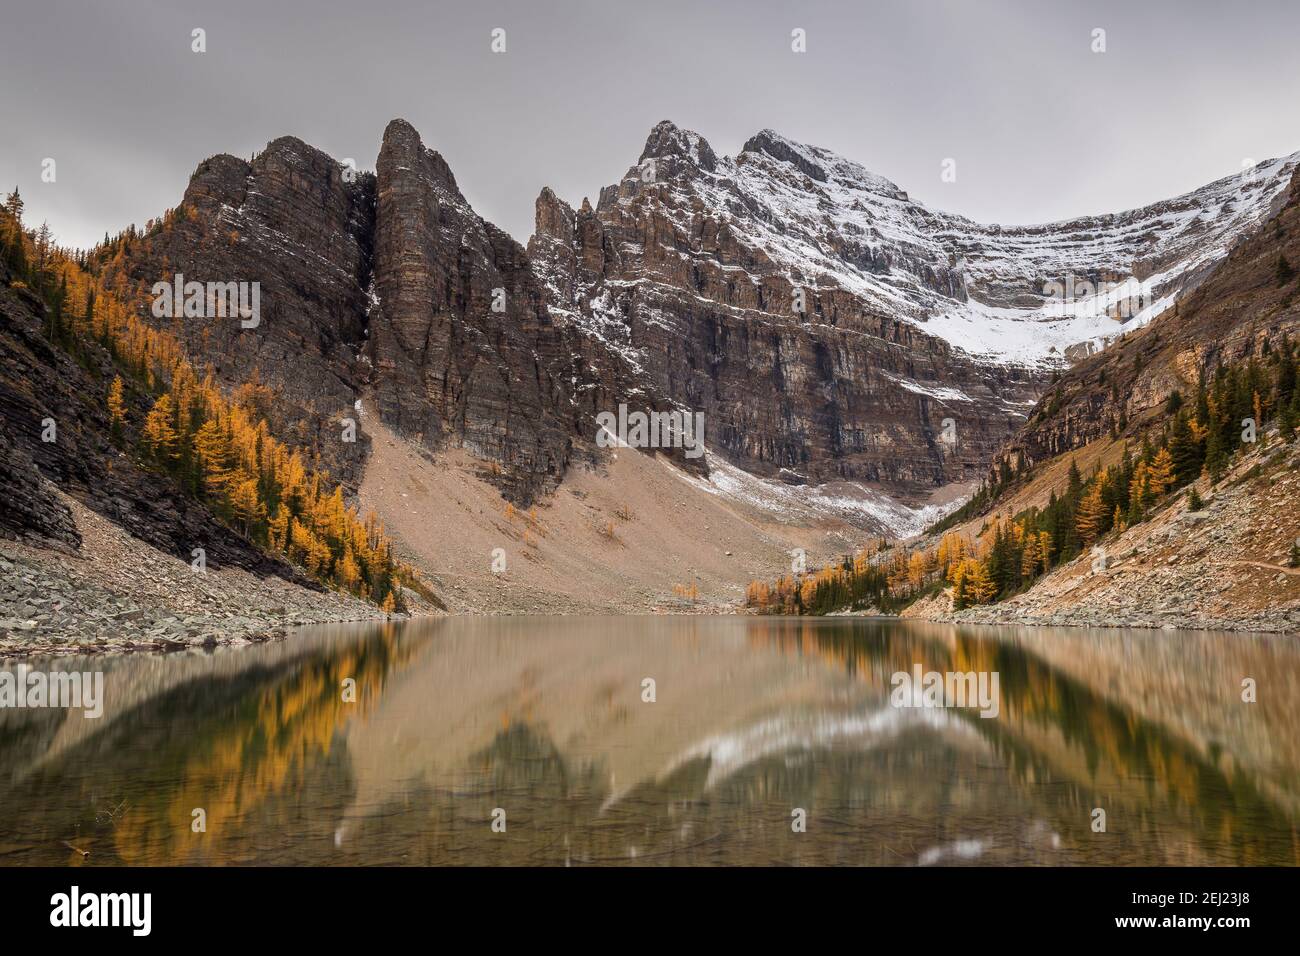 Pics de montagne avec neige en automne, rochers, larches jaunes et vertes le long d'un lac avec des reflets clairs sous un ciel gris. Lac Louis, Banff, Canada Banque D'Images